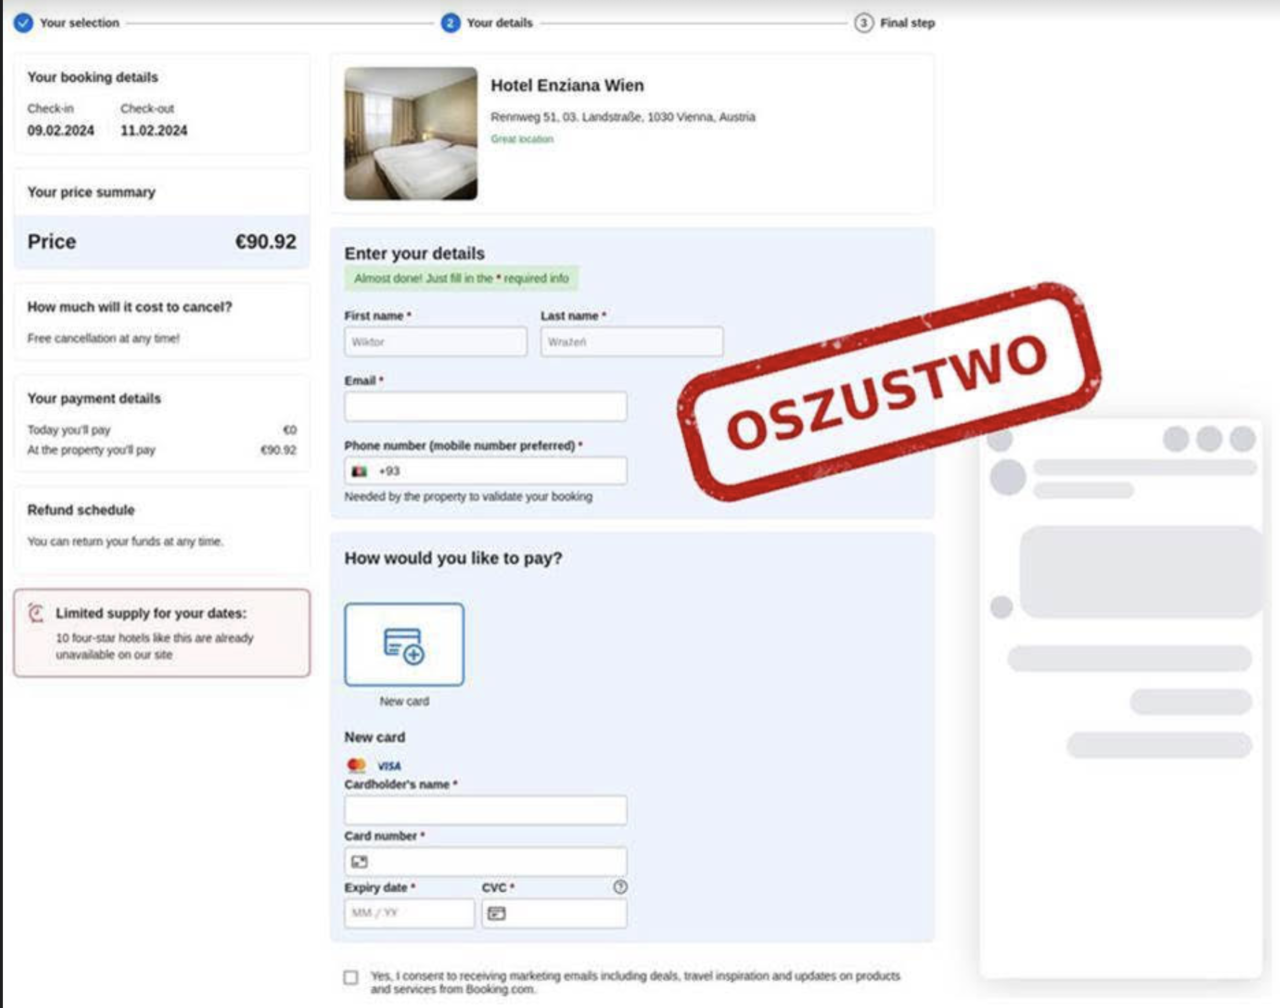 Oszustwo na Booking.com. Zrzut ekranu strony rezerwacyjnej hotelu z formularzem wprowadzania danych osobowych i płatności, na którym umieszczono czerwoną pieczęć z napisem "OSZUSTWO".